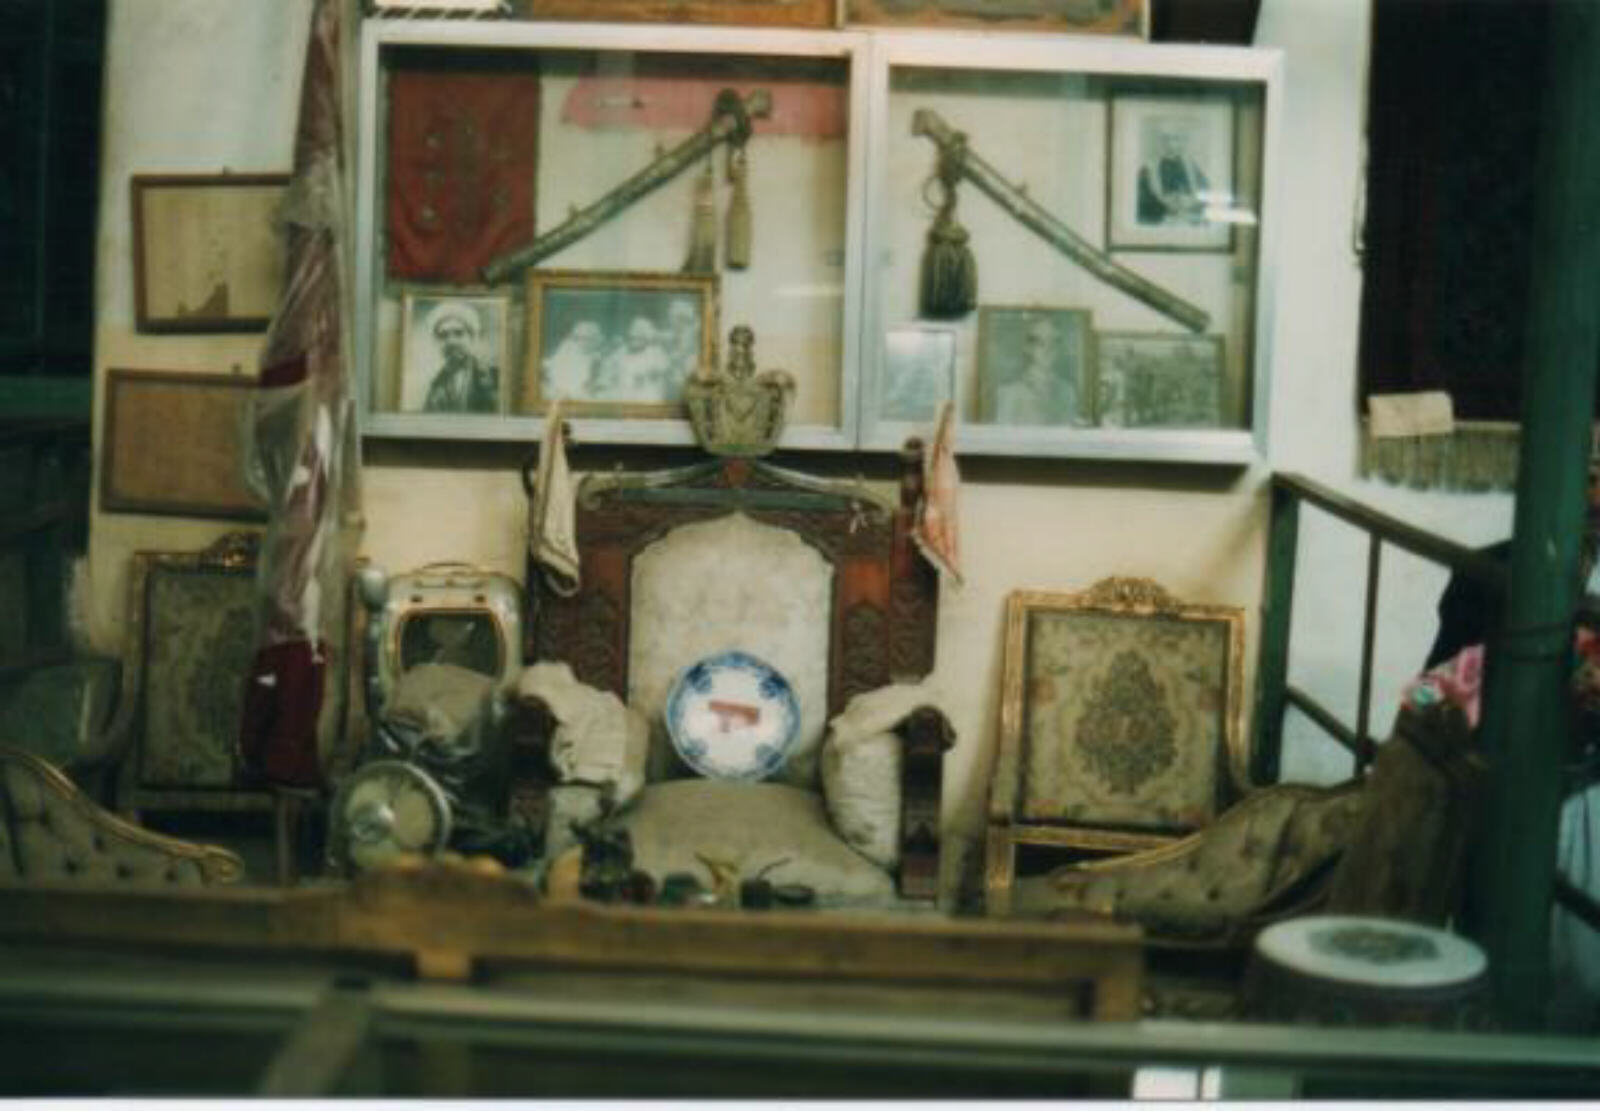 The Imam's throne in the National Museum in Taiz, Yemen